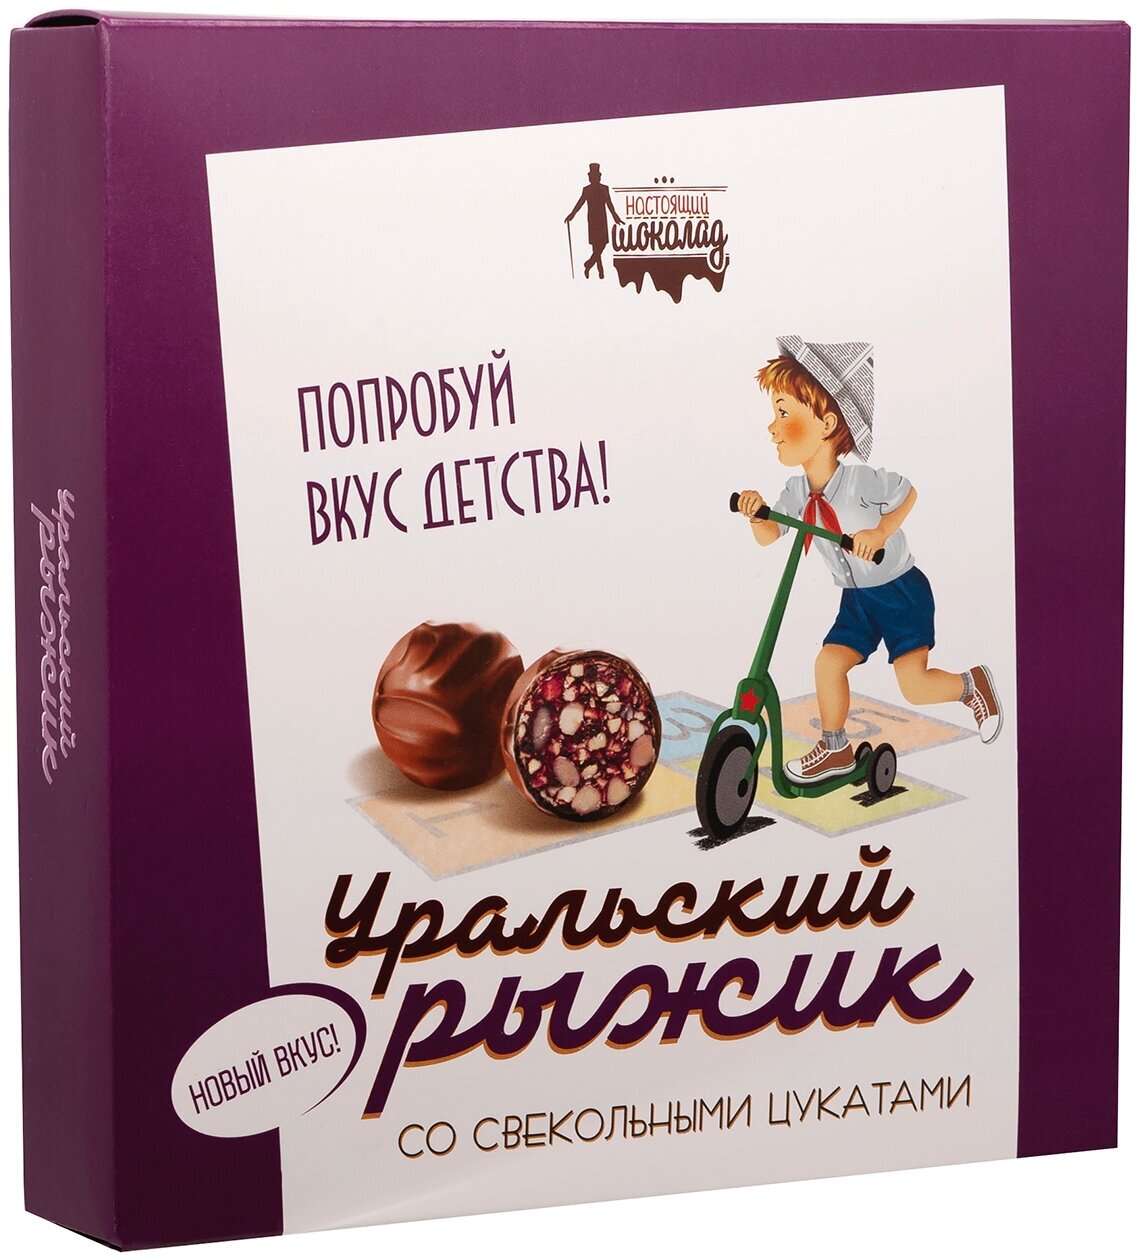 Первая шоколадная компания (Настоящий шоколад) Конфеты Уральский рыжик со свекольными цукатами 200 гр